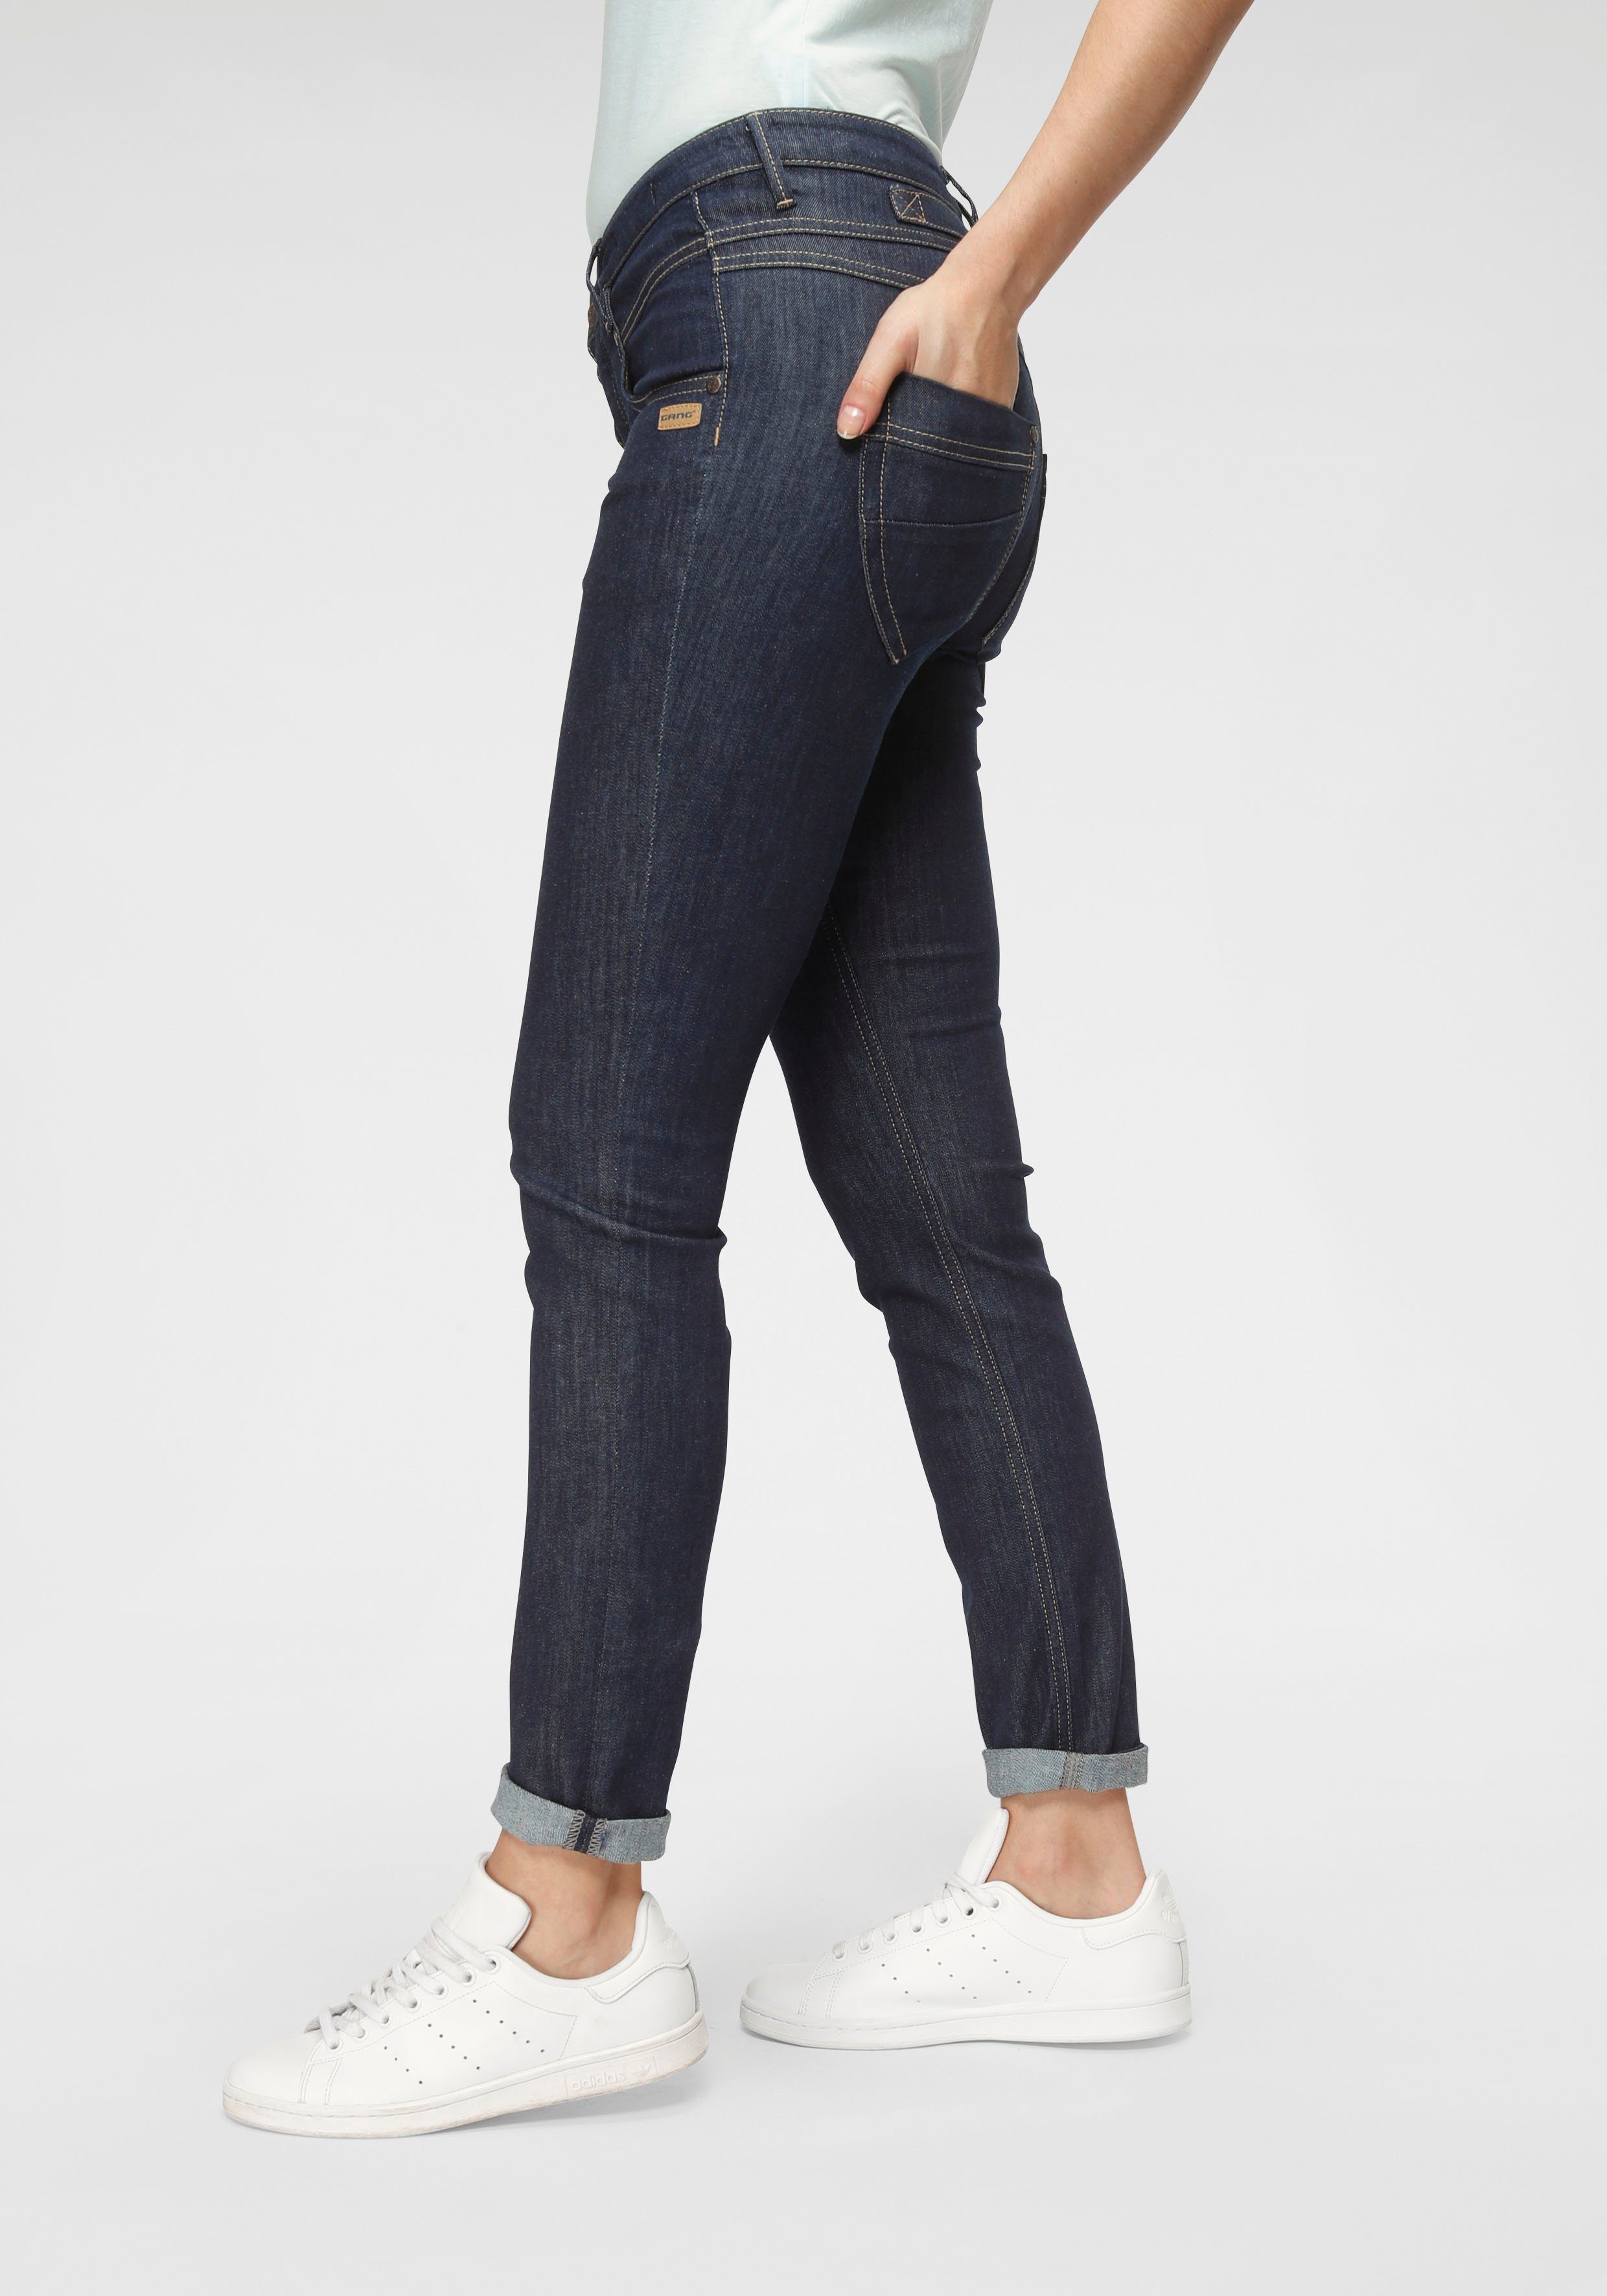 GANG Skinny-fit-Jeans 94Medina mit stylischer halb offener Knopfleiste,  Tiefere Gesäßtaschen mit Teilungsnähten für tolle Shaping Wirkung